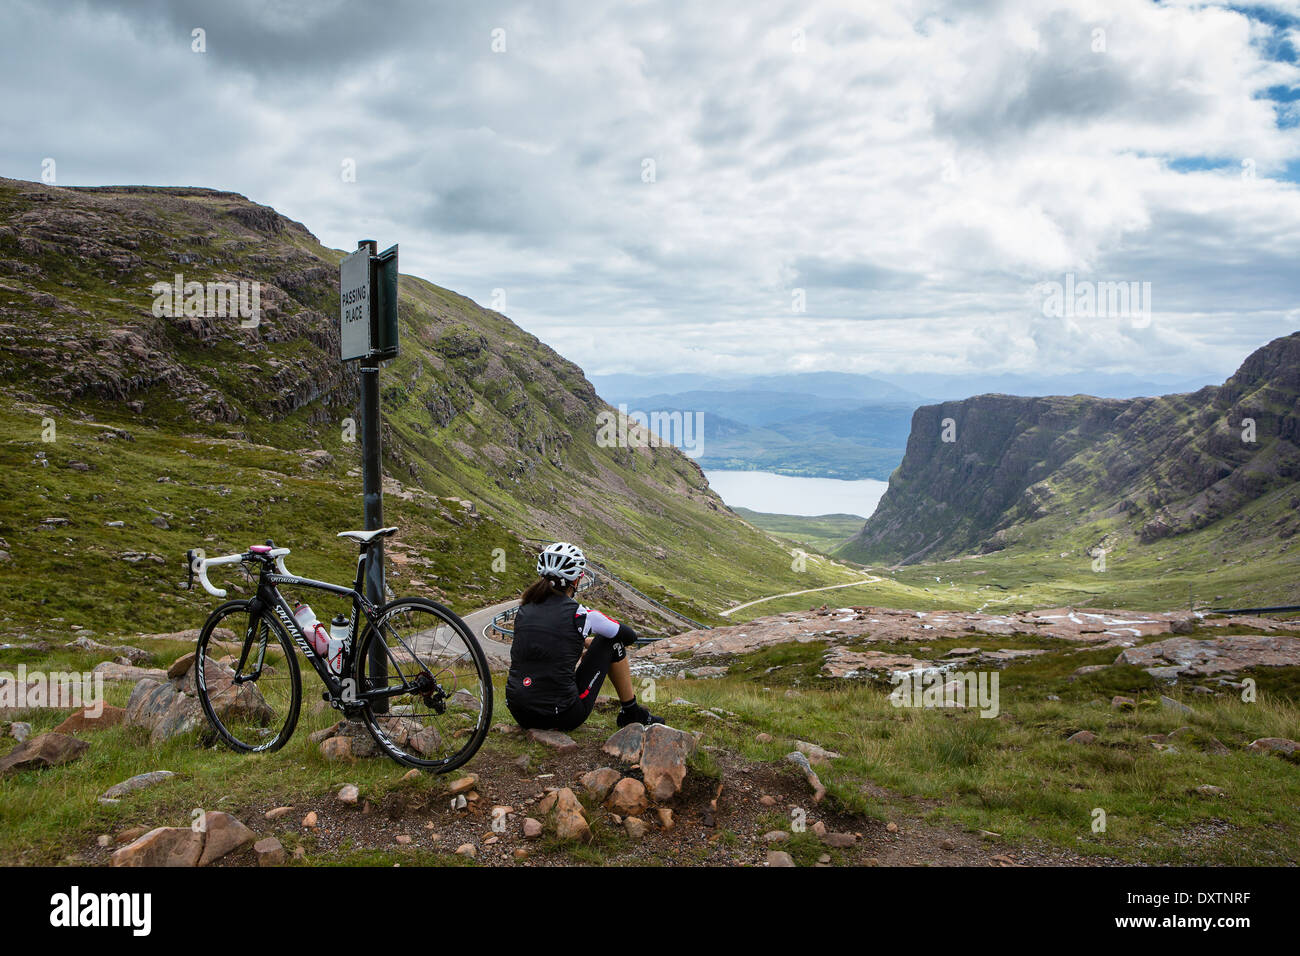 C'est un cycliste britannique de moitié plus longue route grimper en Ecosse Lochcarron. Retour à la recherche sur l'atteinte Banque D'Images